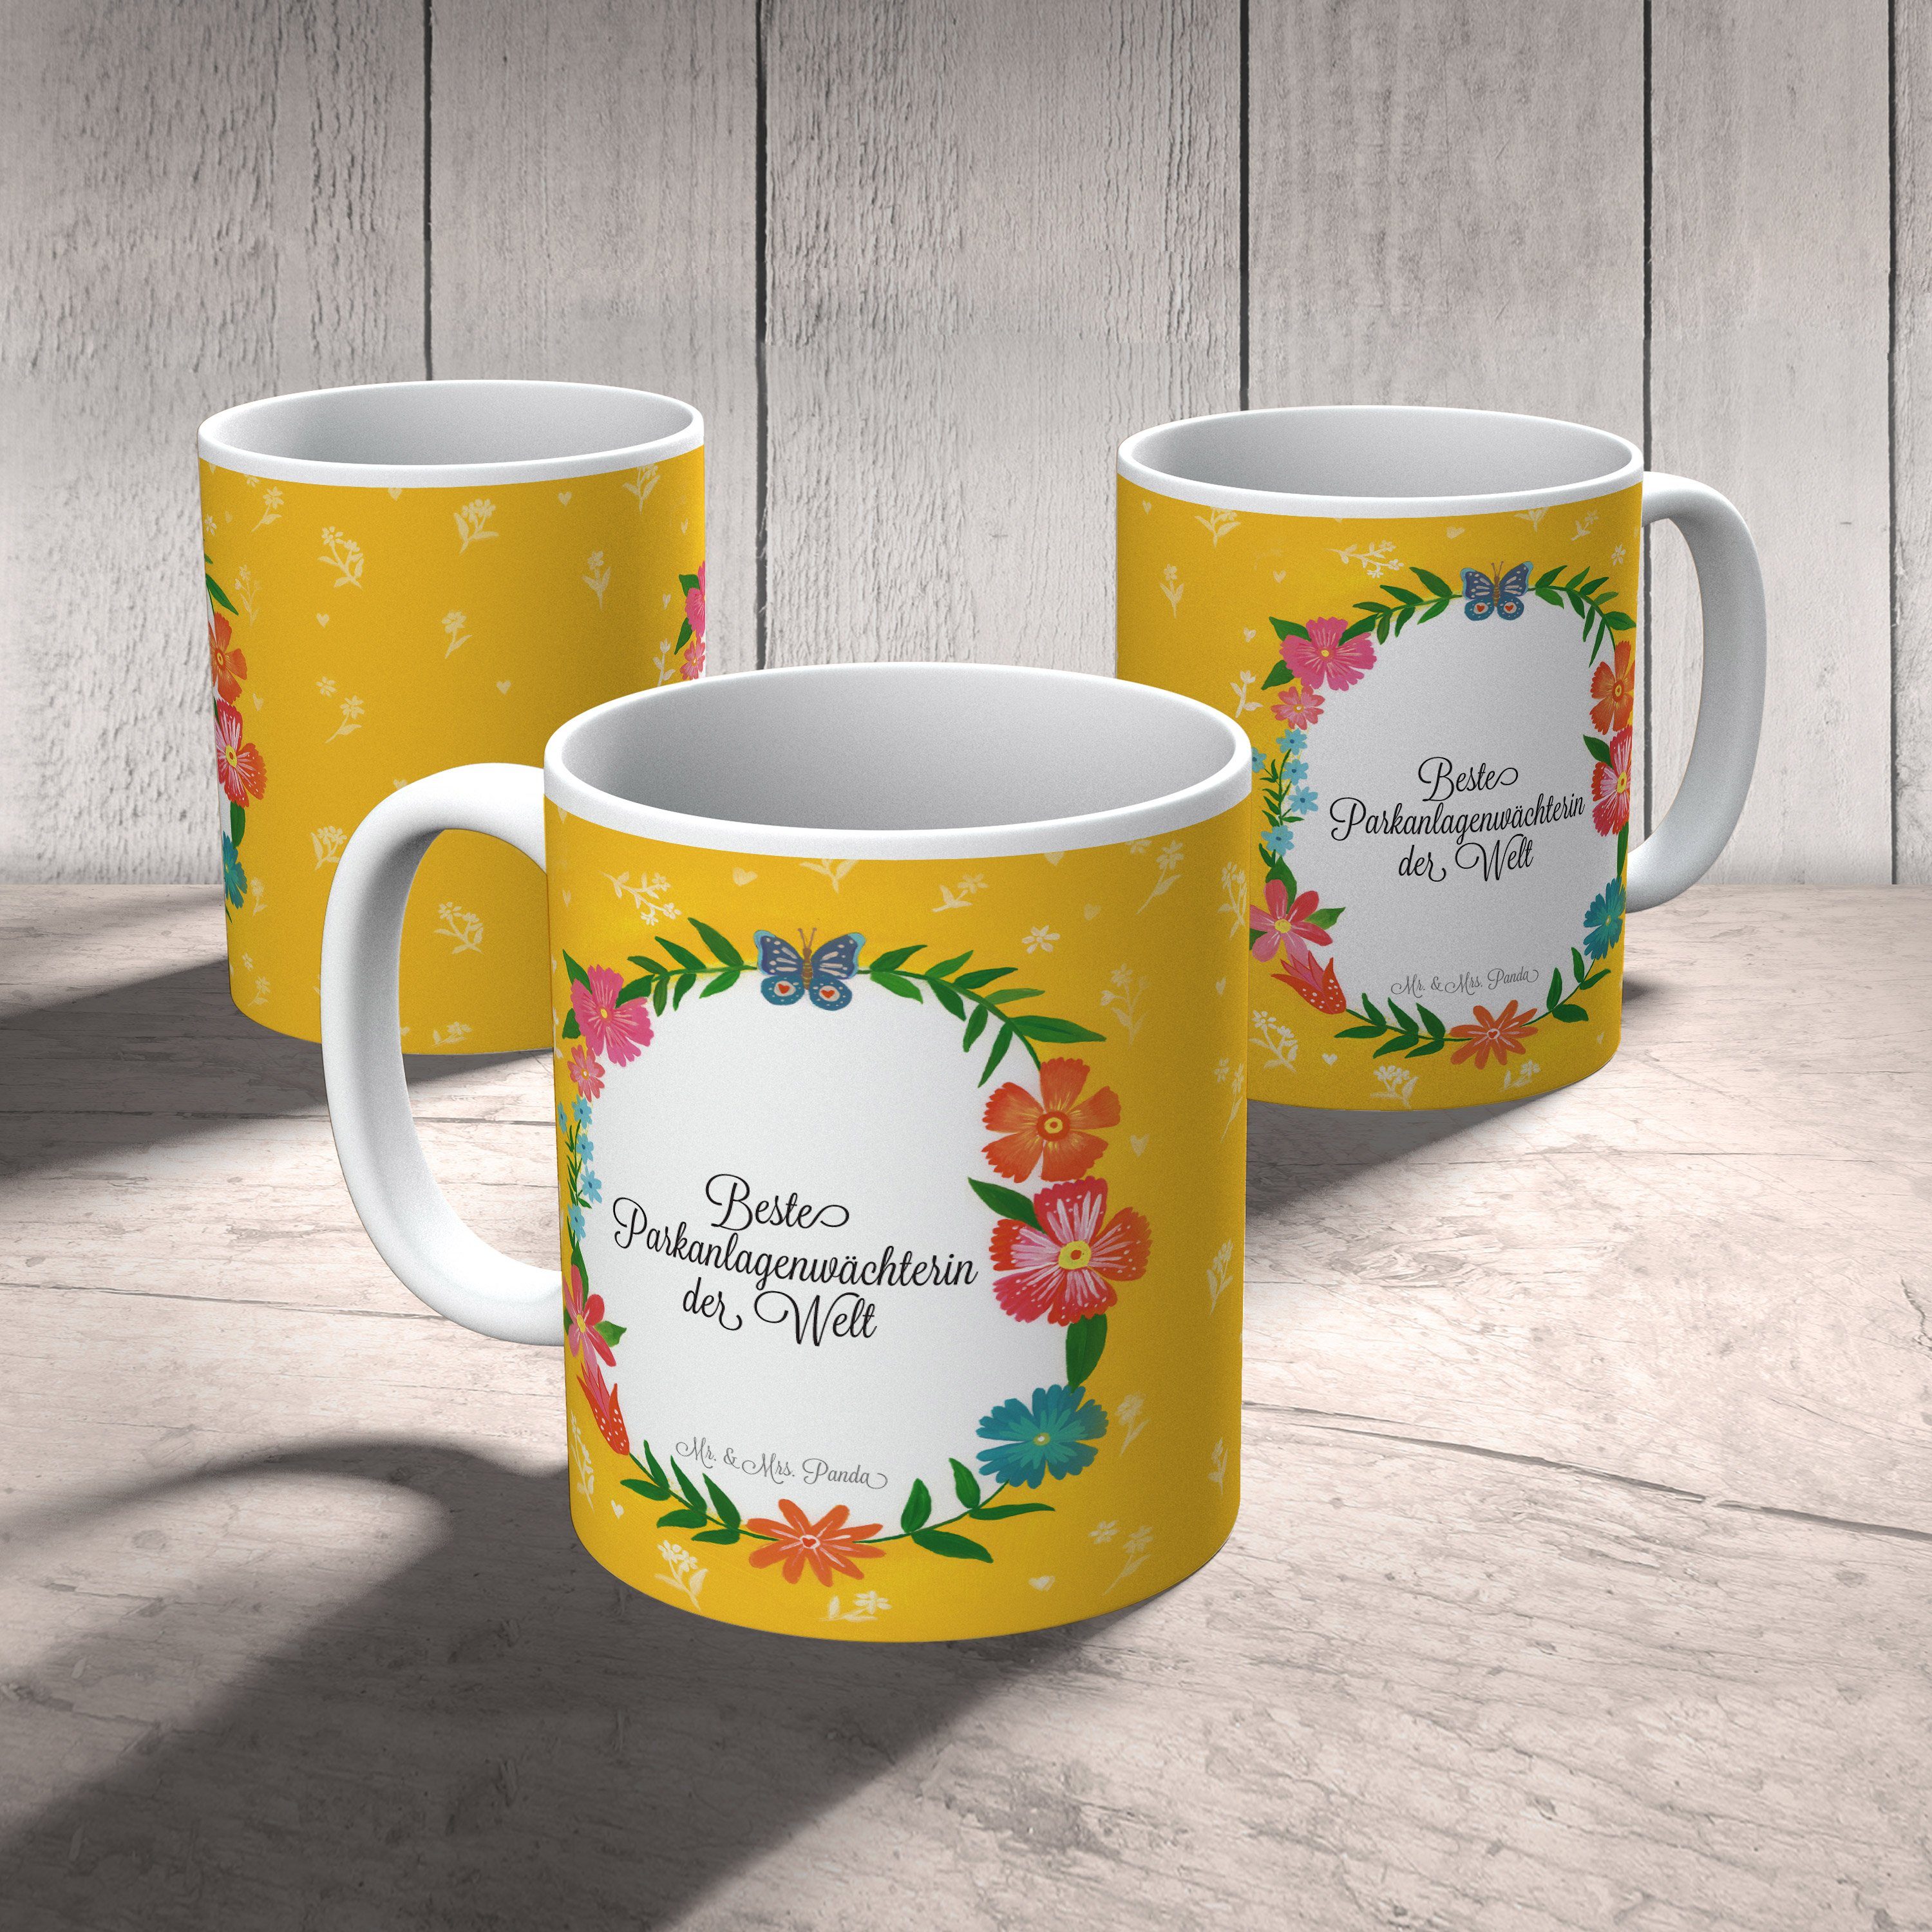 Mr. & Mrs. Panda Tasse Teetasse, - Geschenk, Kaff, Büro Keramik Abschied, Tasse, Parkanlagenwächterin